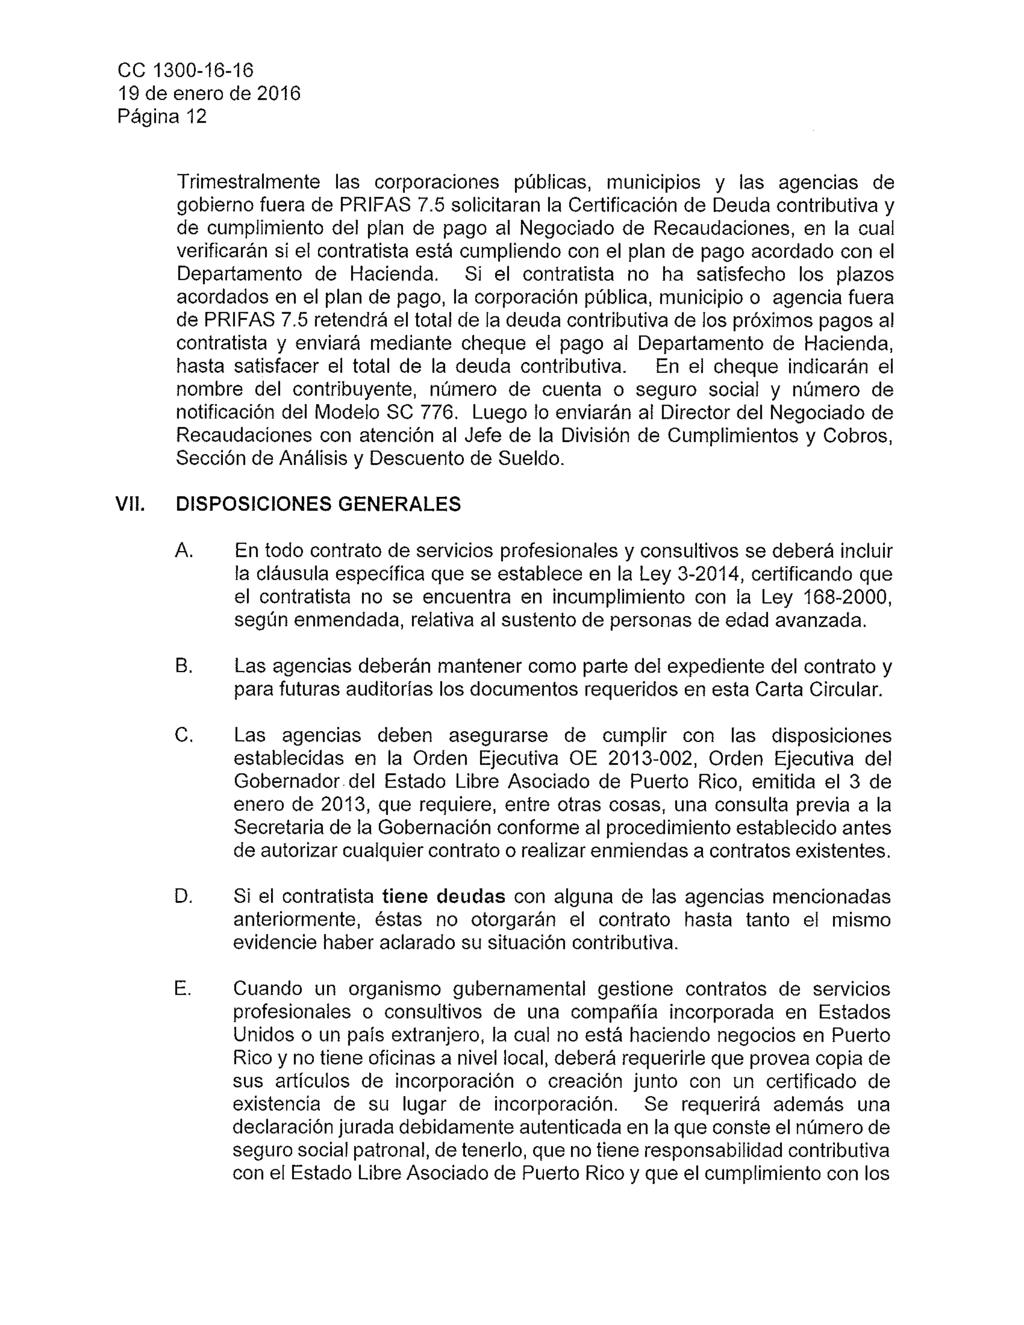 Página 12 Trimestralmente las corporaciones públicas, municipios y las agencias de gobierno fuera de PRIFAS 7.